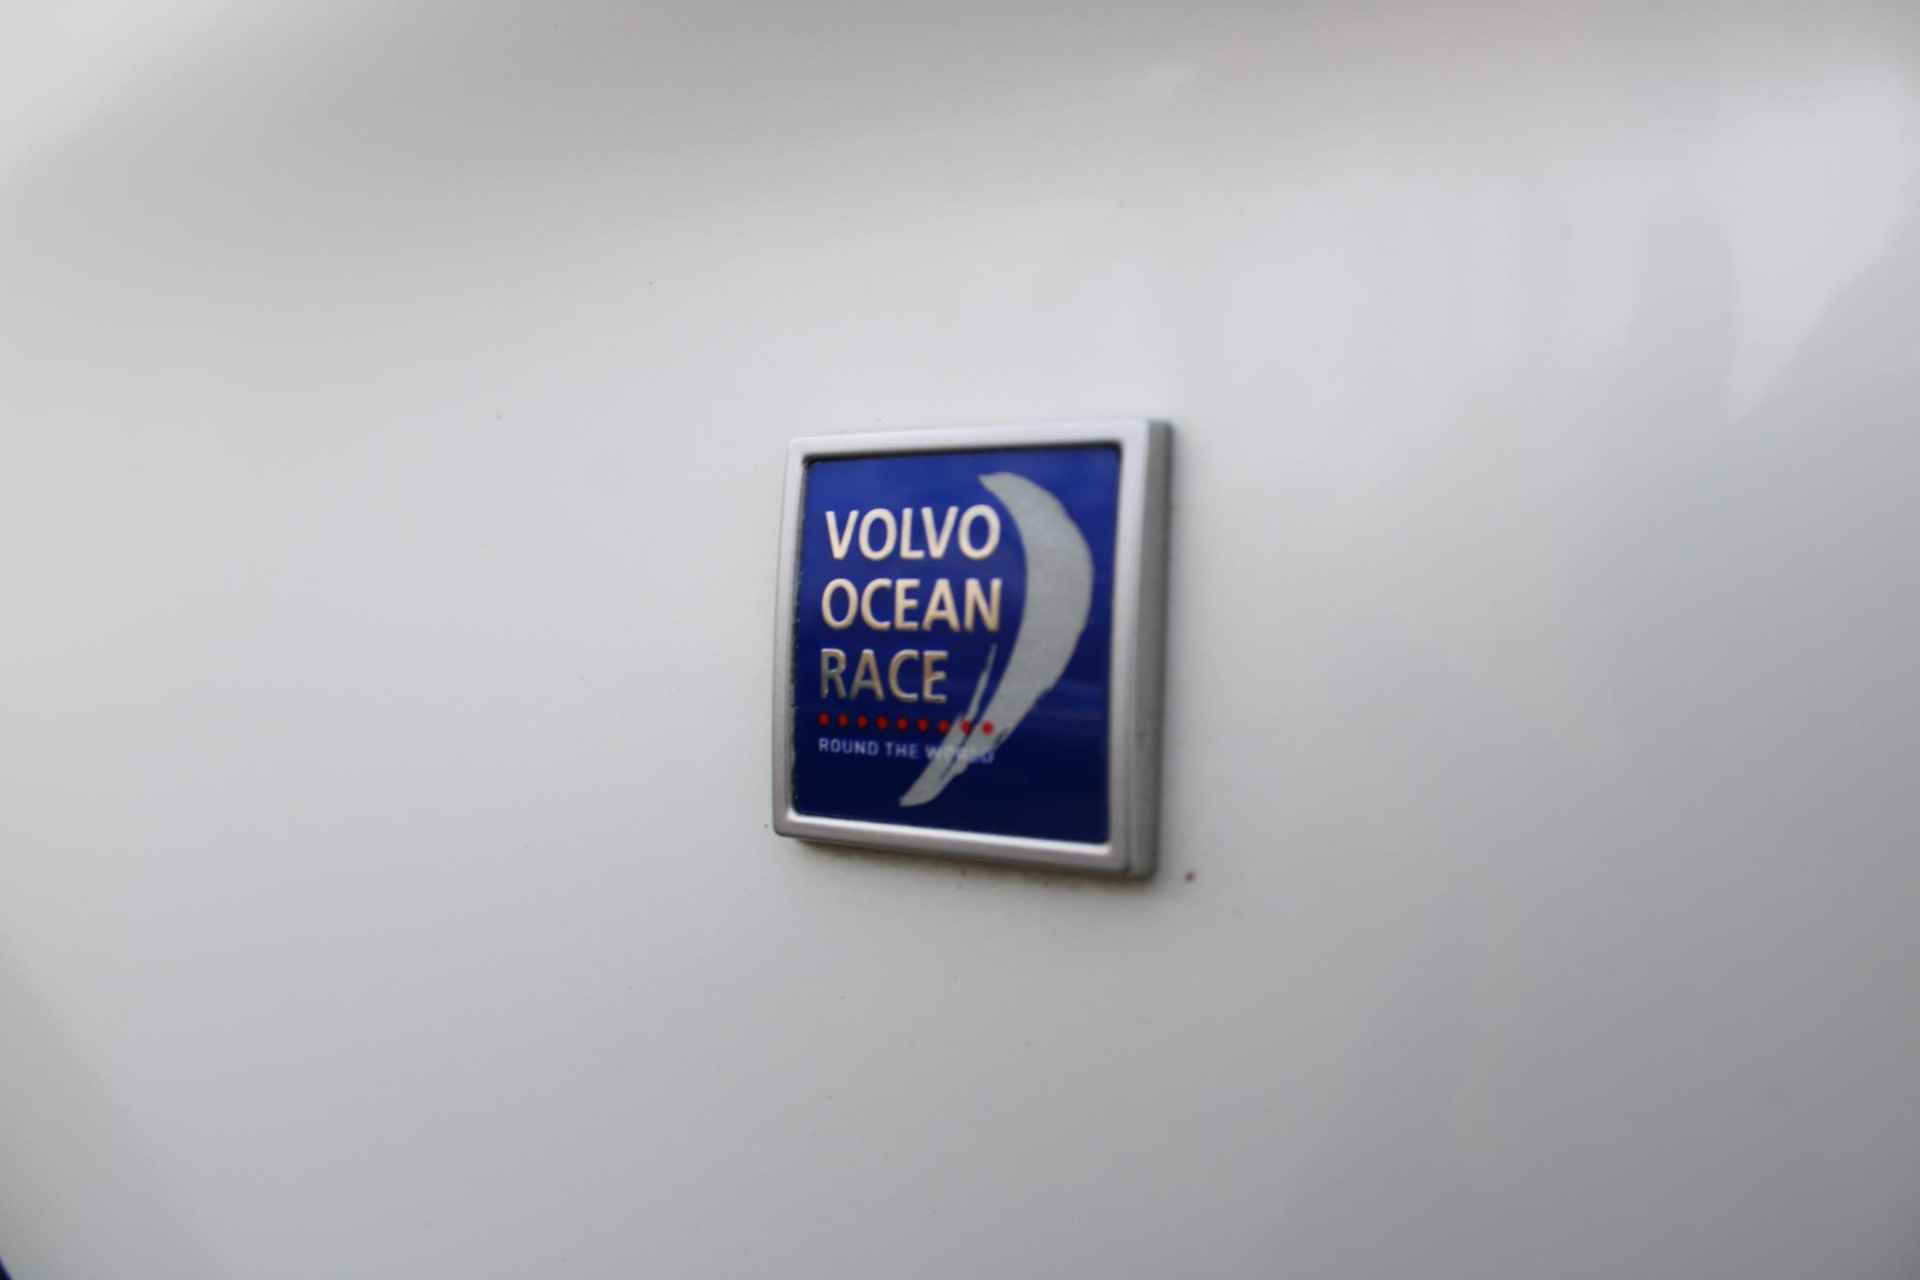 Volvo XC60 T5 245PK AUT8 FWD Ocean Race, Sensus Navigatie, Parkeersensoren V+A & Camera achter, Lederen bekleding, Verwarmbare Voorstoelen, Trekhaak, BLIS, Zeer compleet! - 9/26